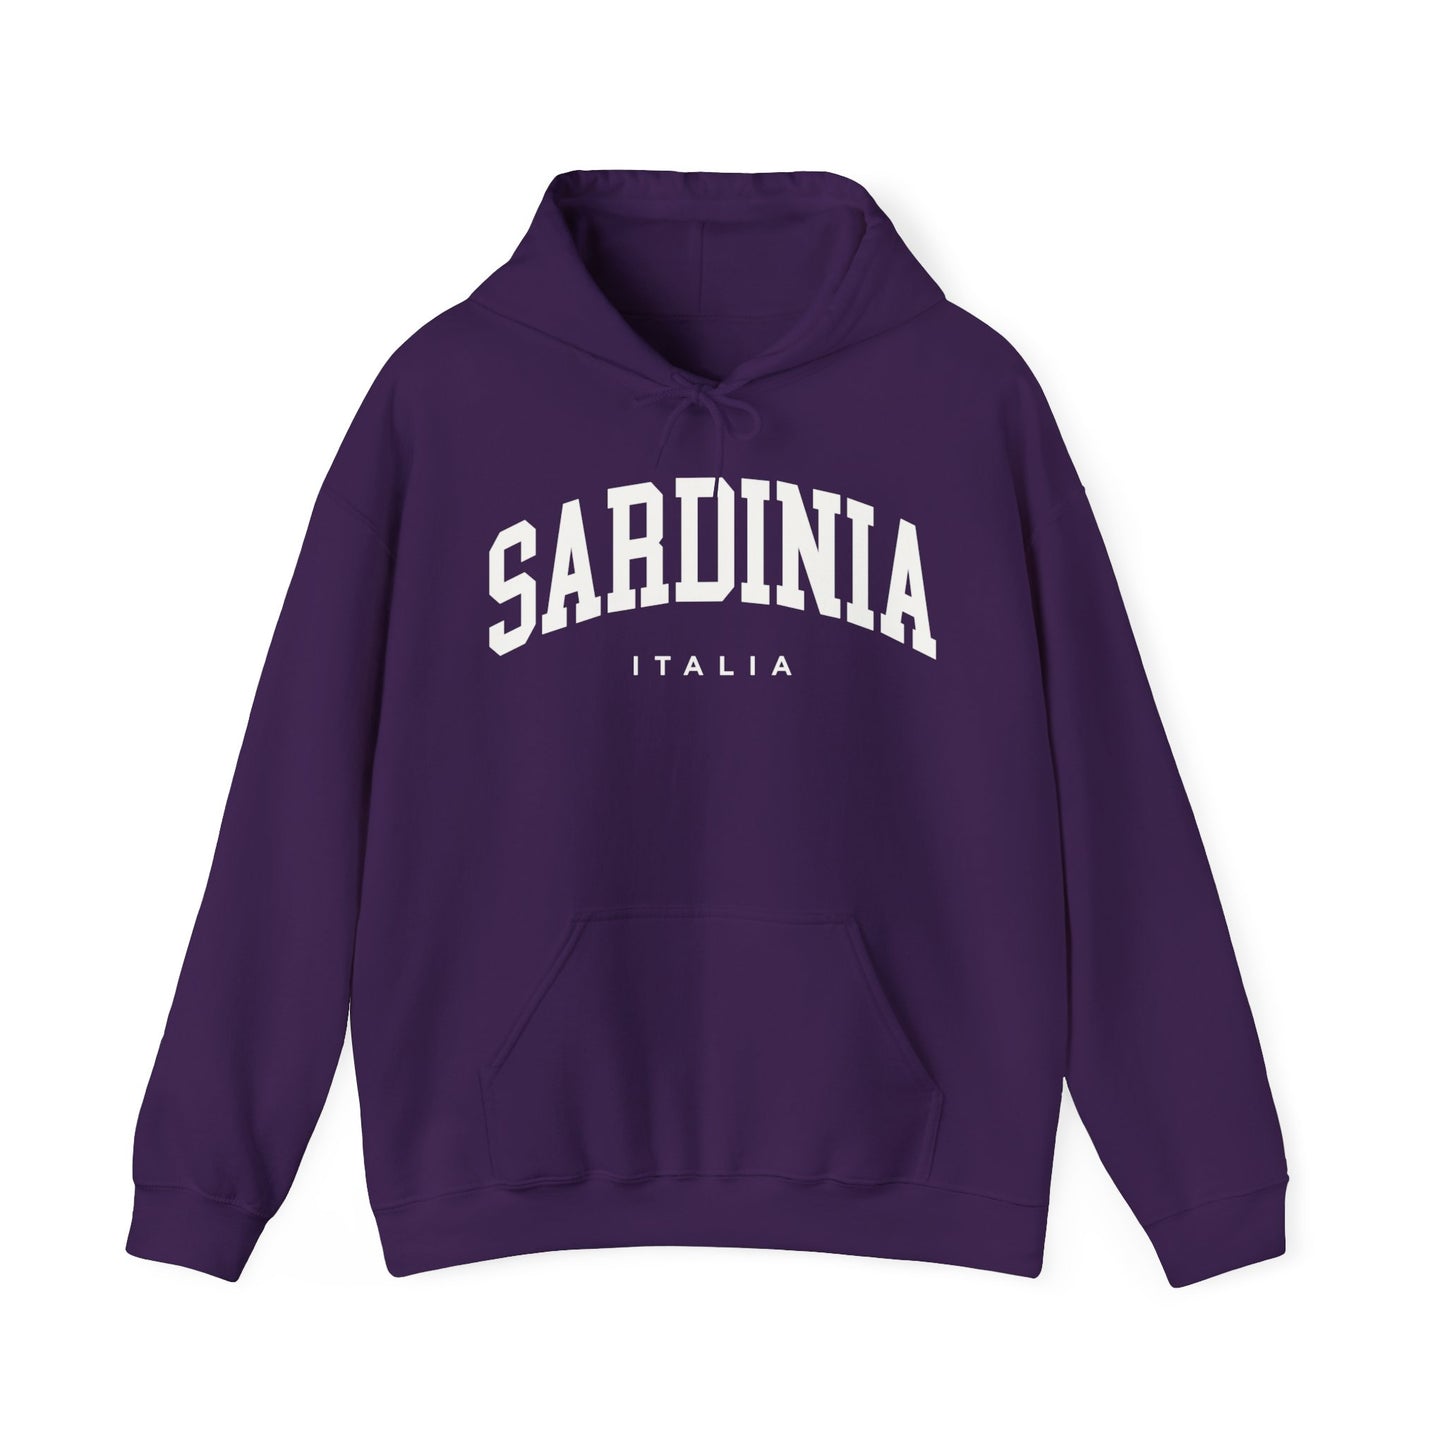 Sardinia Italy Hoodie